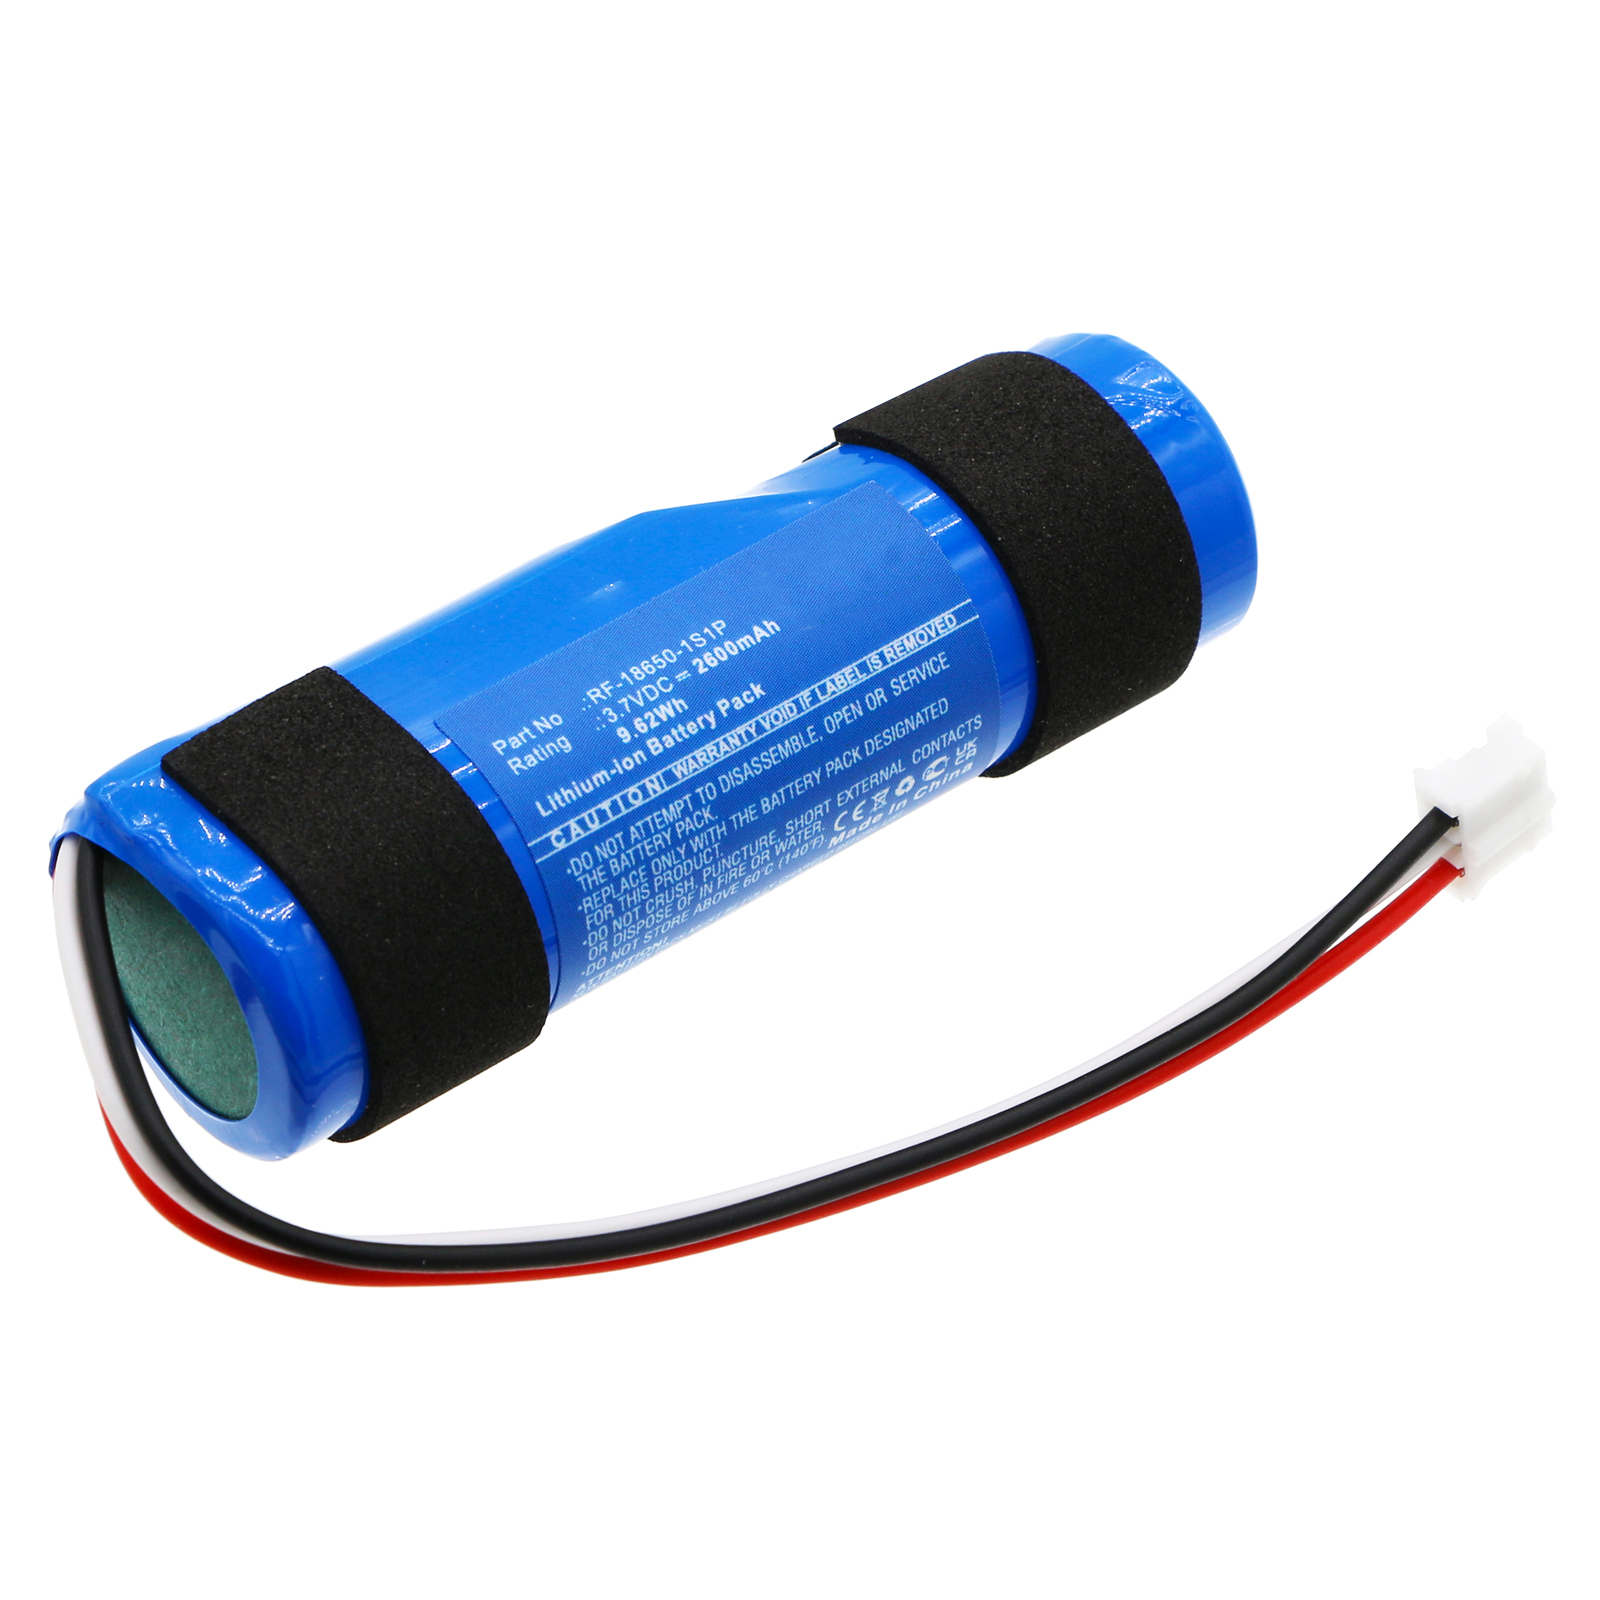 Synergy Digital Speaker Battery, Compatible with Groove onn RF-18650-1S1P Speaker Battery (Li-ion, 3.7V, 2600mAh)